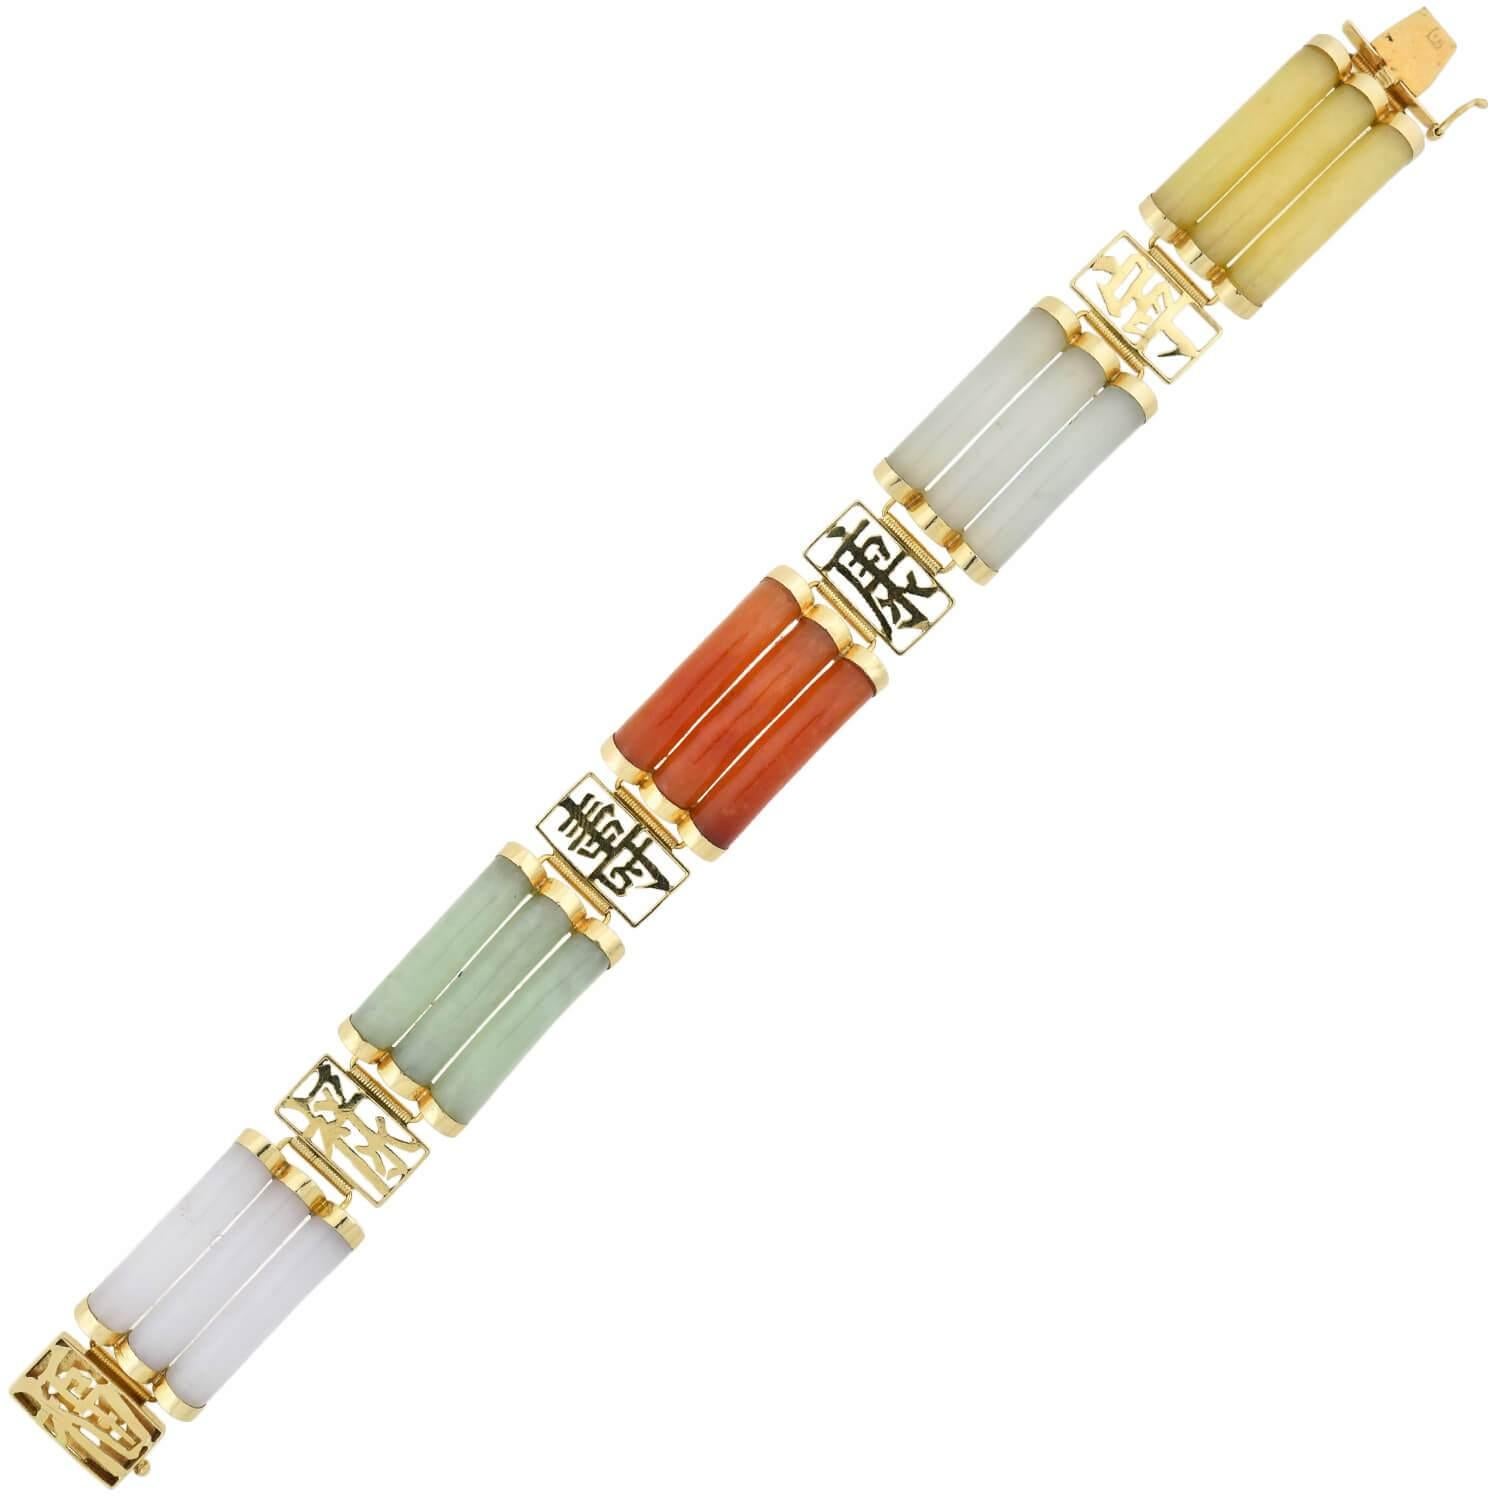 Ein lustiges und einzigartiges Jade-Armband aus der Zeit der 1960er Jahre! Das aus 14-karätigem Gelbgold gefertigte Schmuckstück zeigt ein abwechselndes Design aus mehrfarbiger Jade und offenen chinesischen Schriftzeichen. Die farbenfrohen